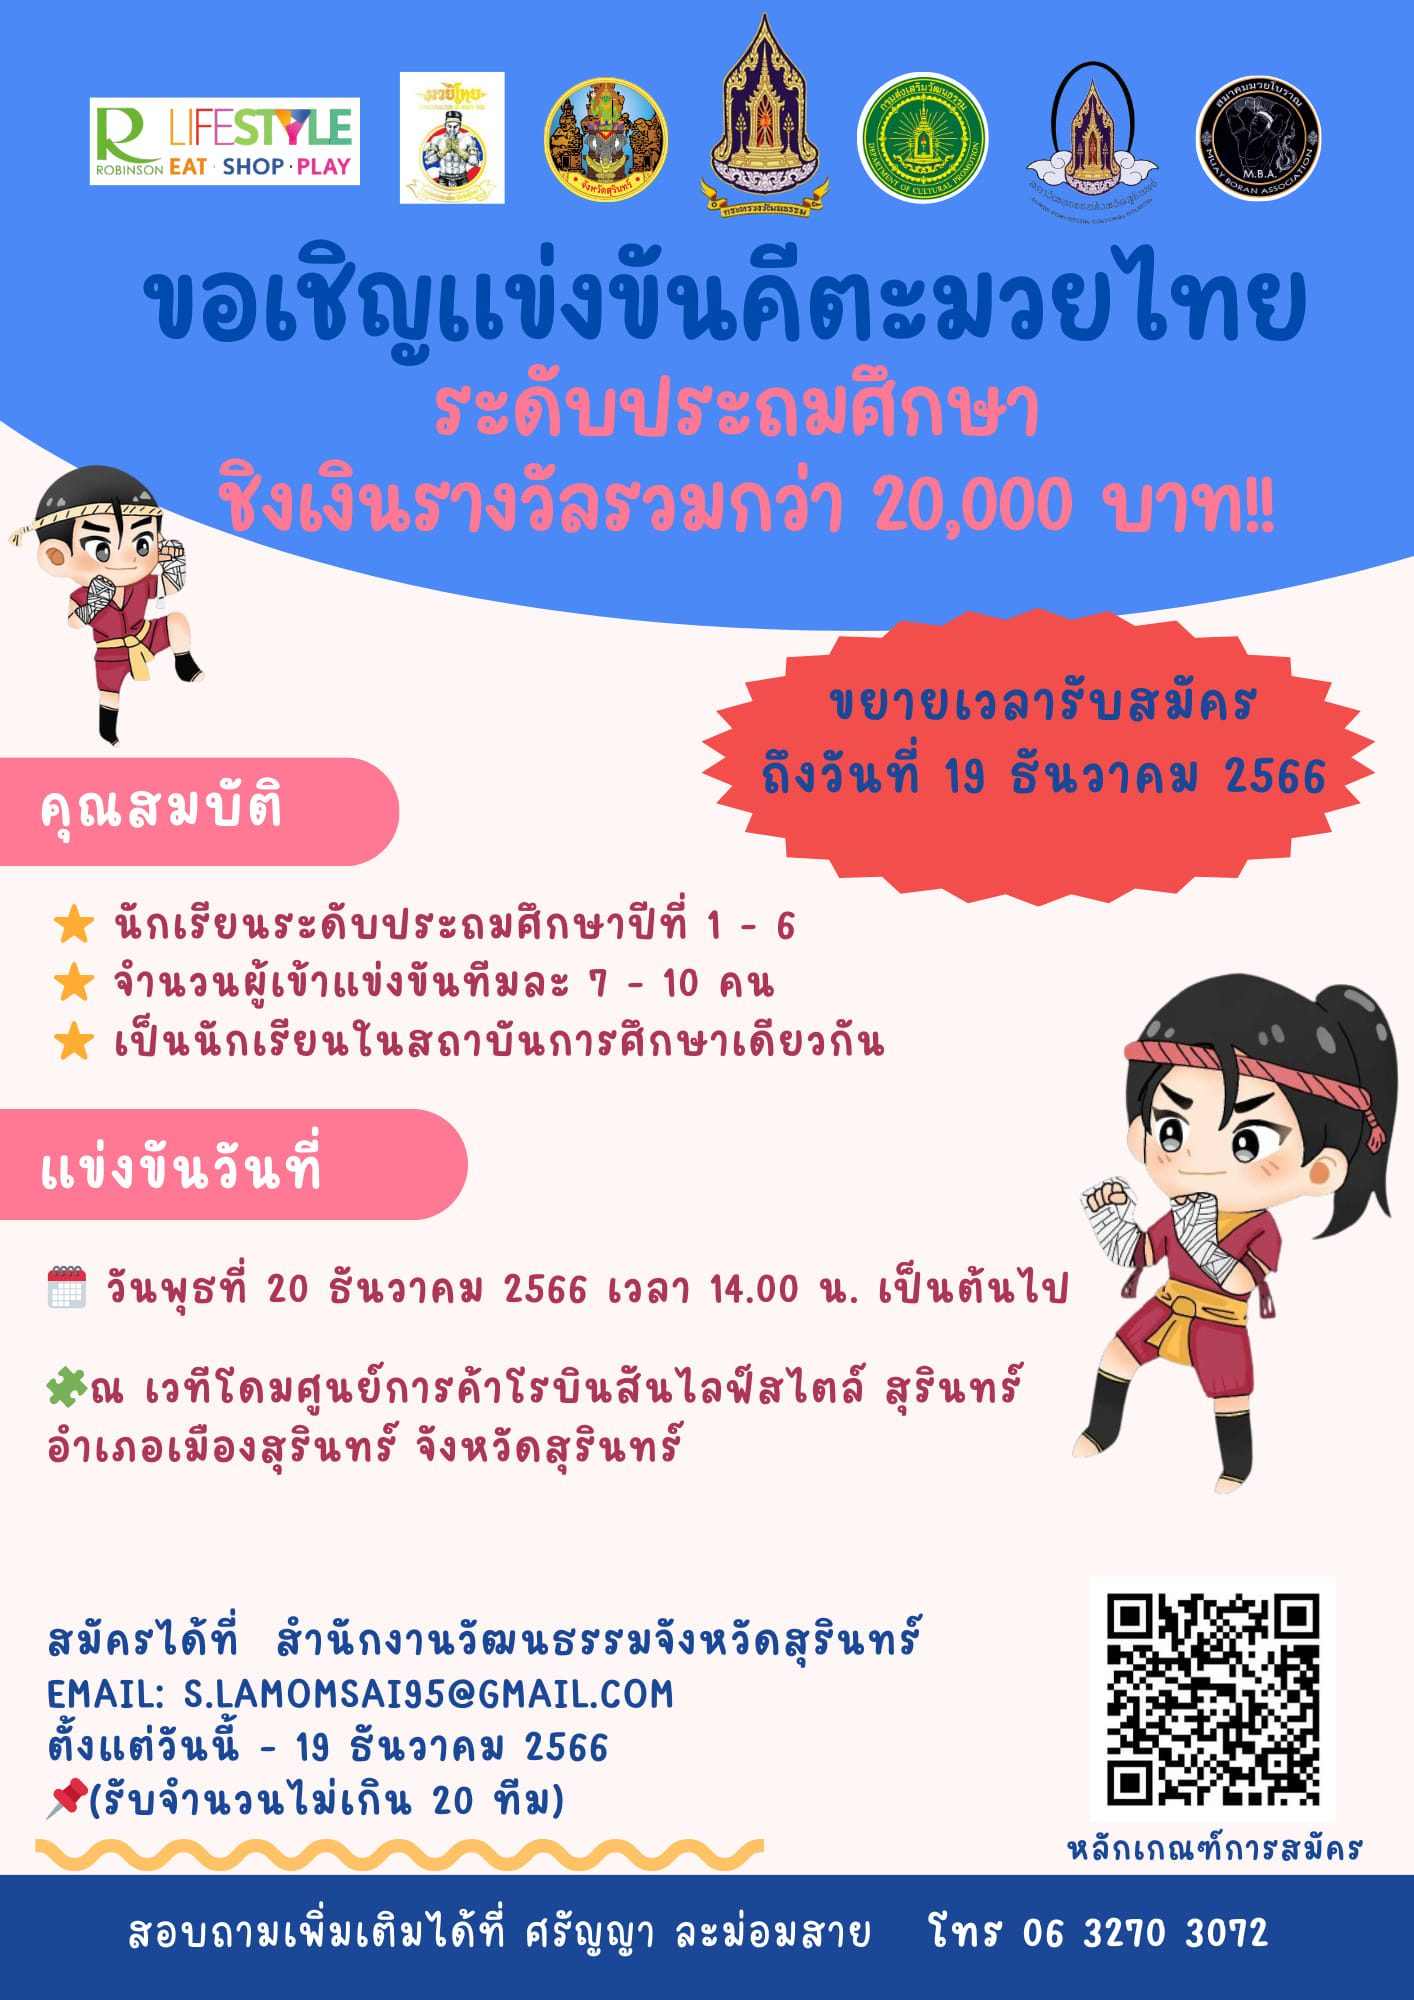 ขอเชิญส่งทีมเข้าร่วมแข่งขันคีตะมวยไทย ระดับประถมศึกษา  รับสมัครถึง 19 ธันวาคมนี้ 